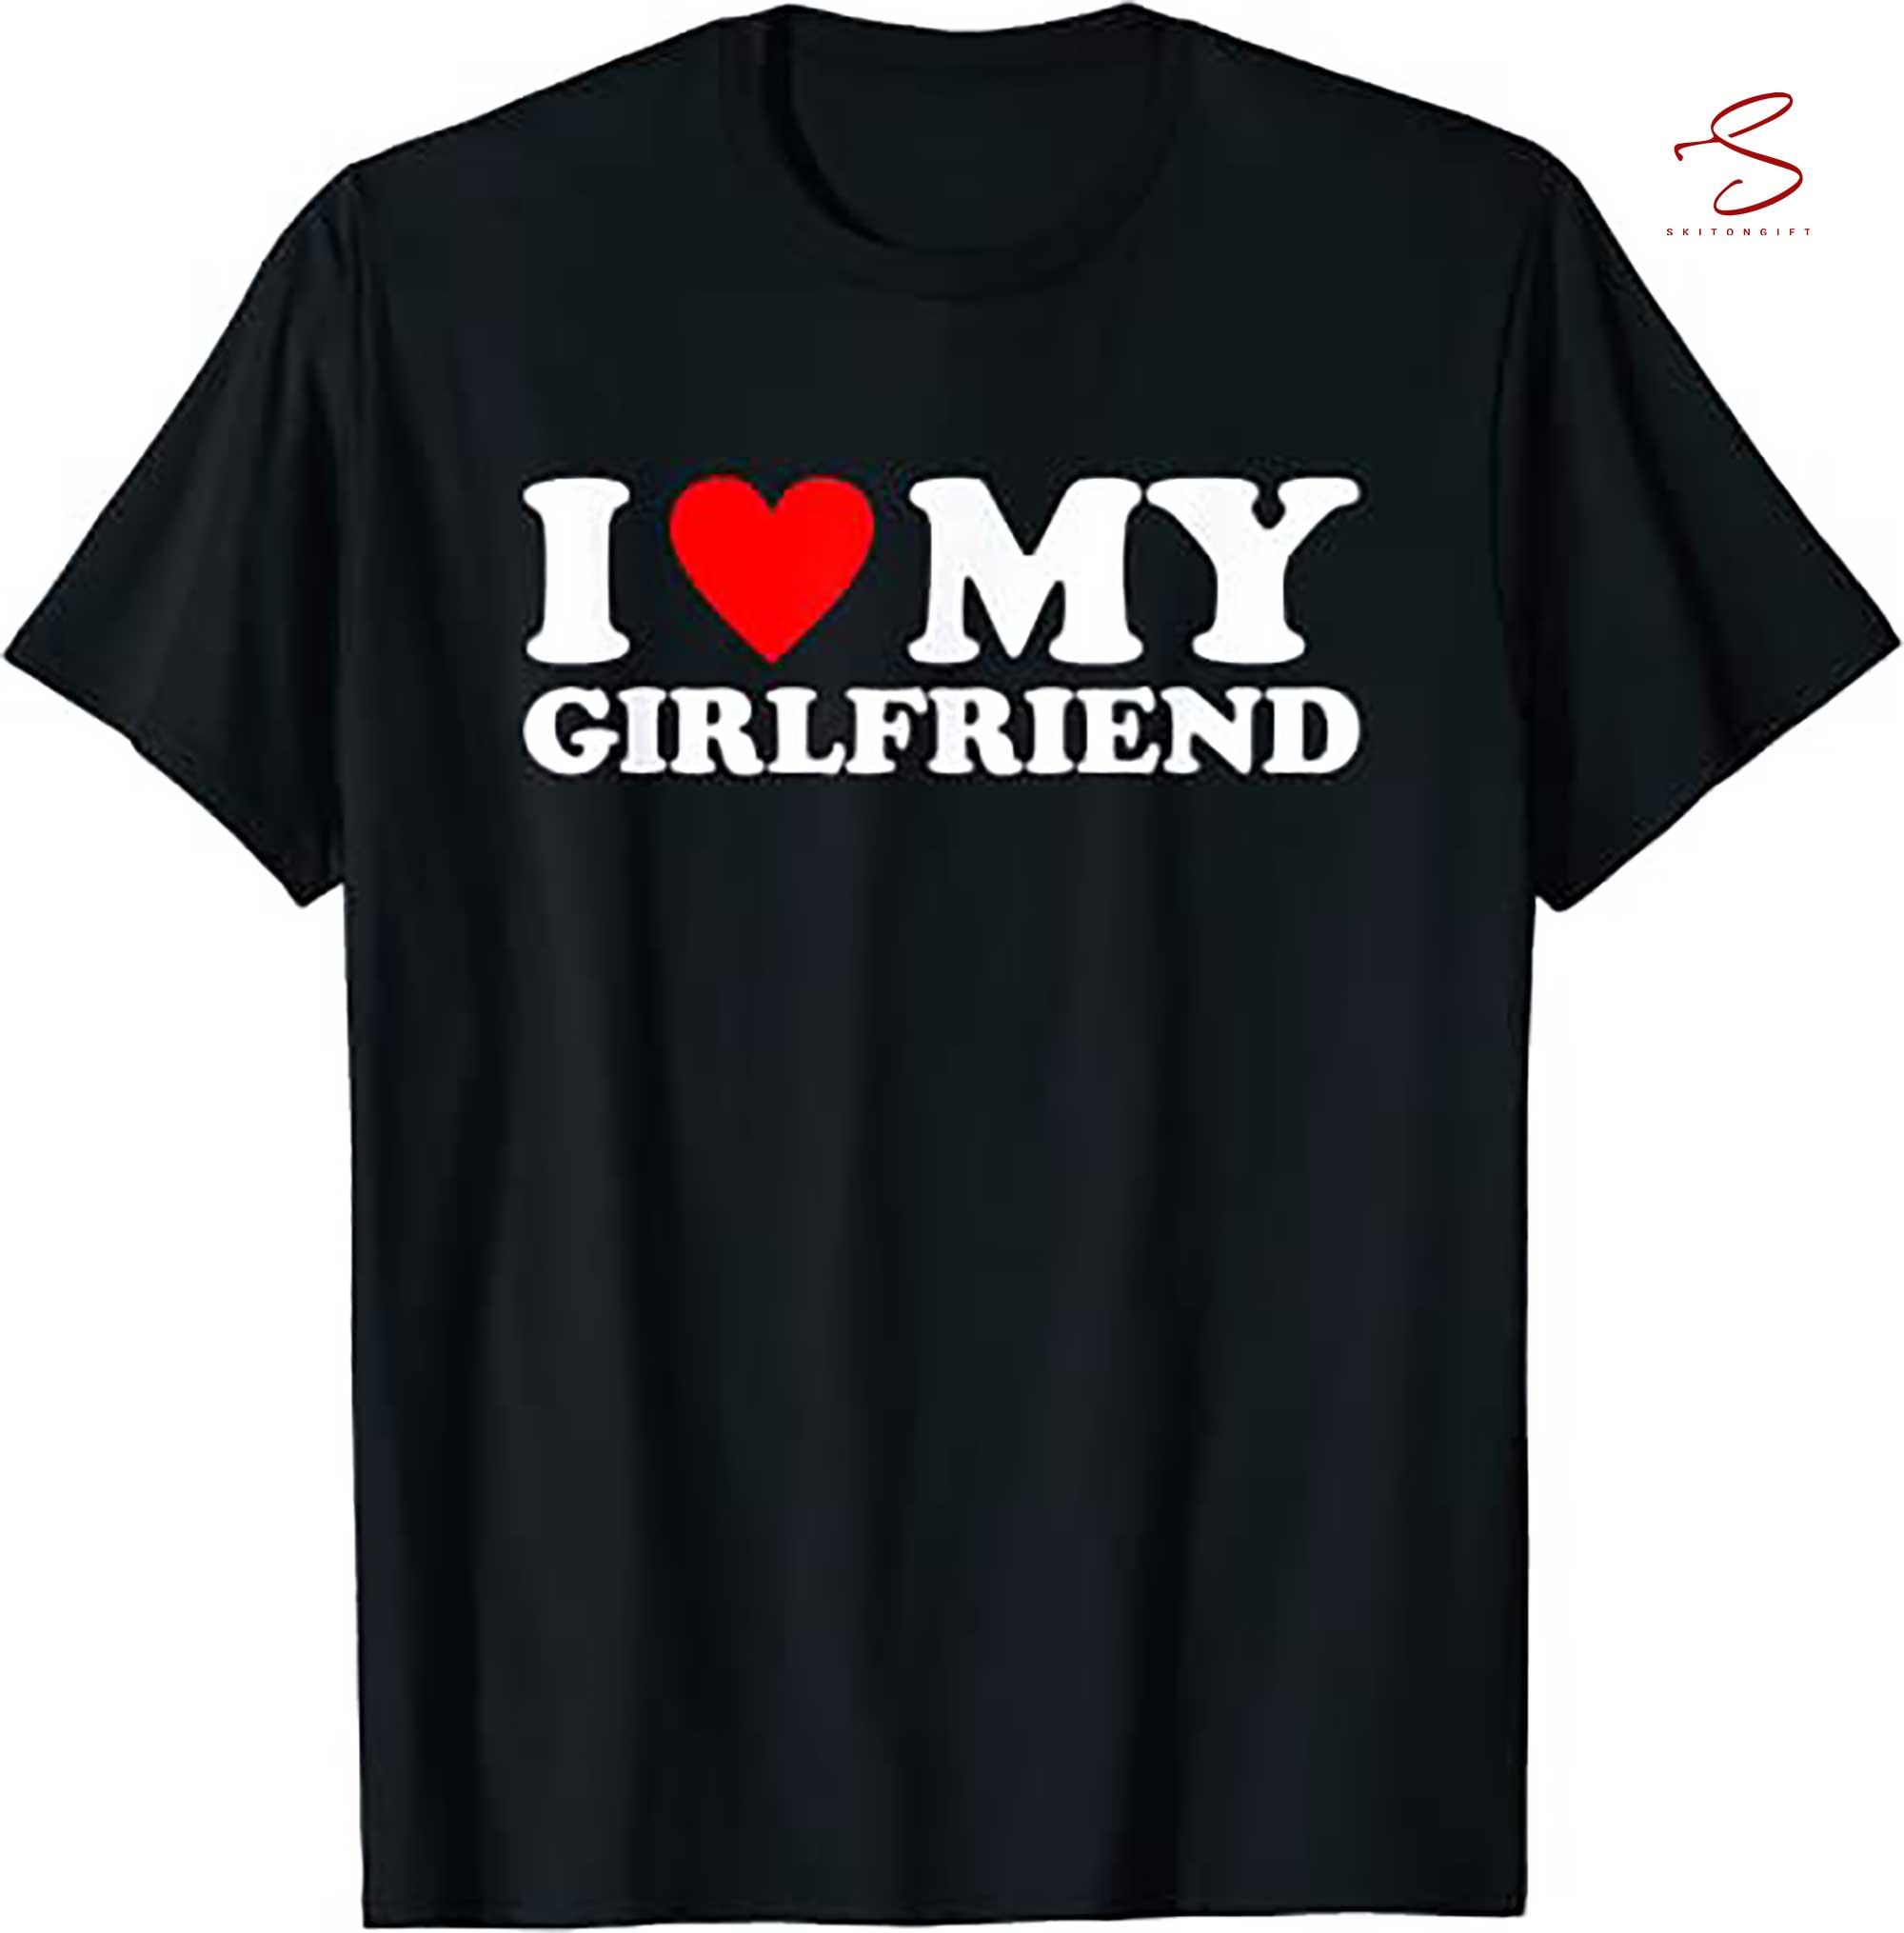 Skitongift I Love My Girlfriend Shirt I Heart My Girlfriend Shirt Gf T Shirt